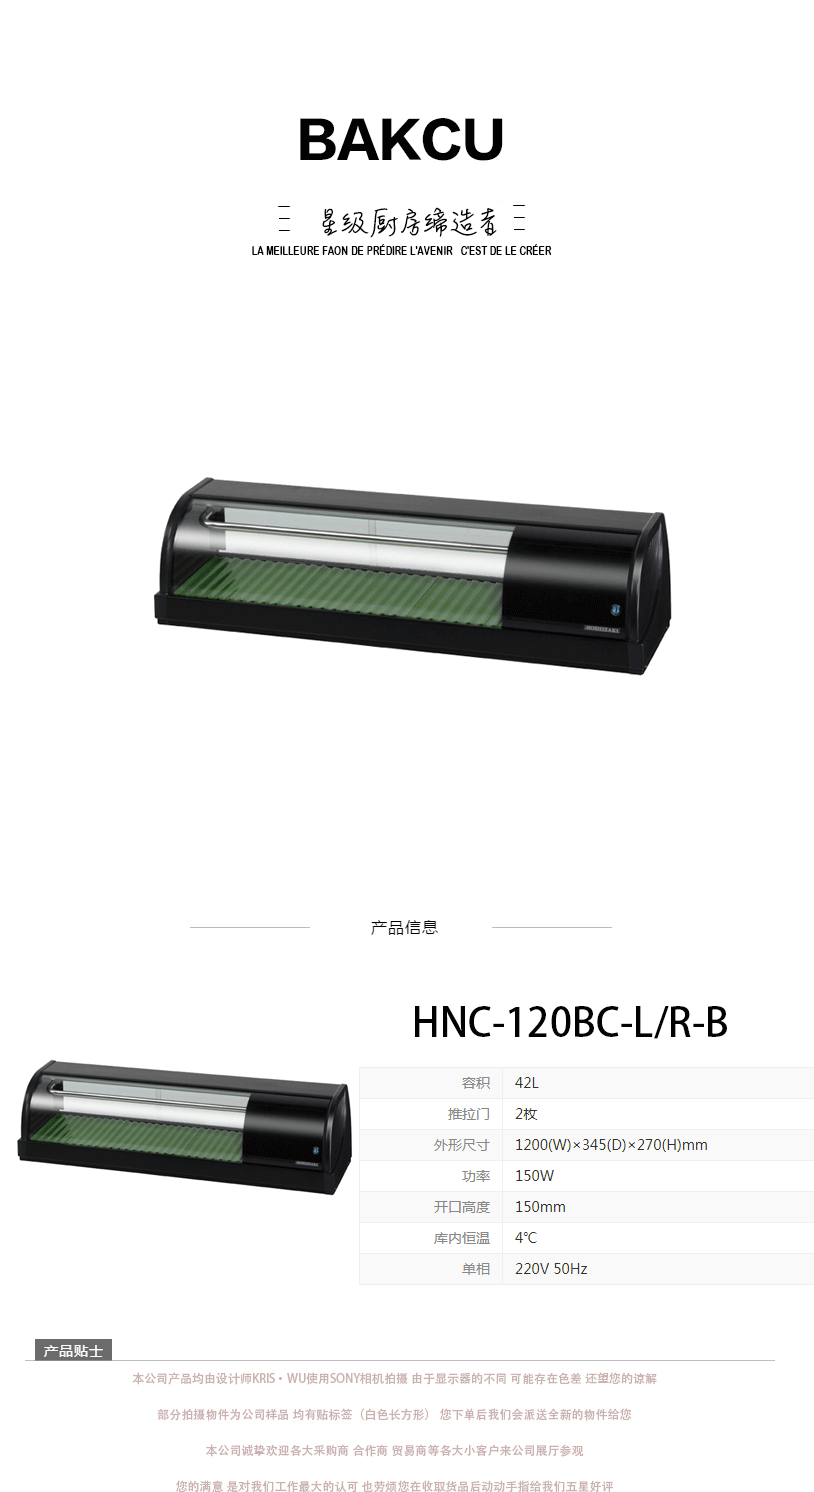 日本HOSHIZAKI星崎不锈钢原装进口HNC-120BC-L/R-B寿司柜示例图1